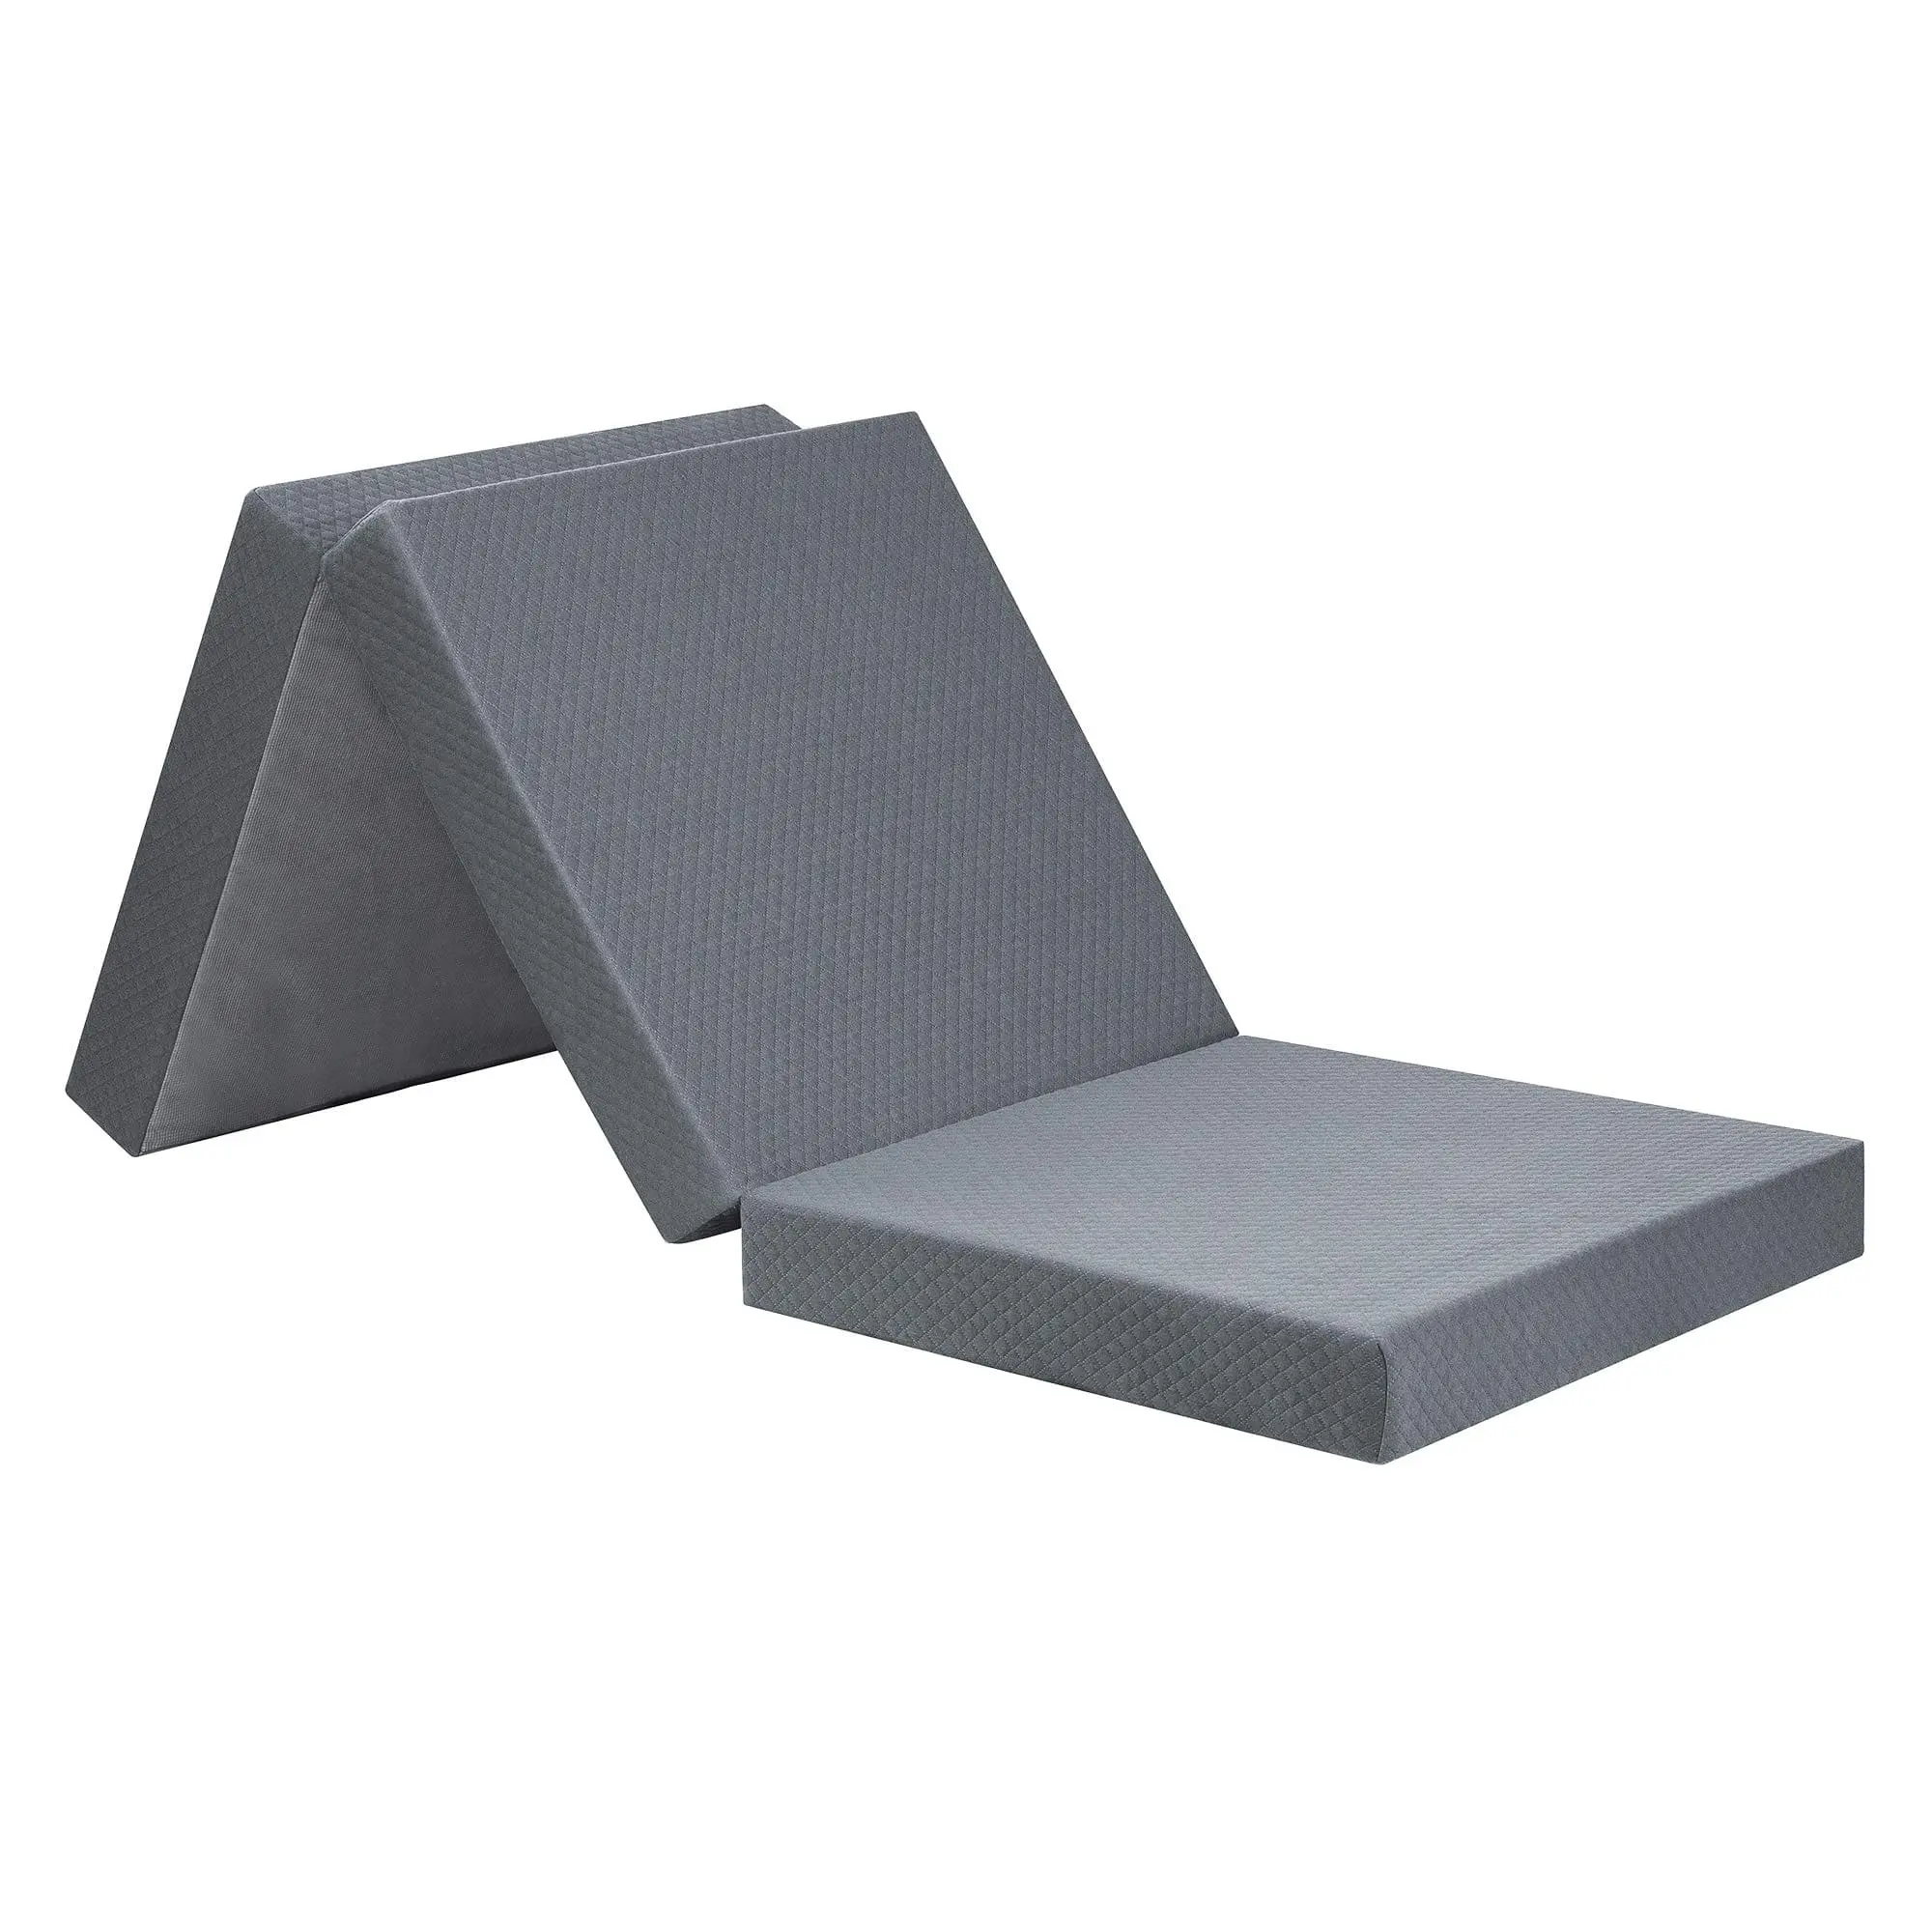 Juancai Premium toptan yatak katlanmış yatak ev mobilya için bir kutu tek boyutlu lateks jel bellek köpük sünger minder